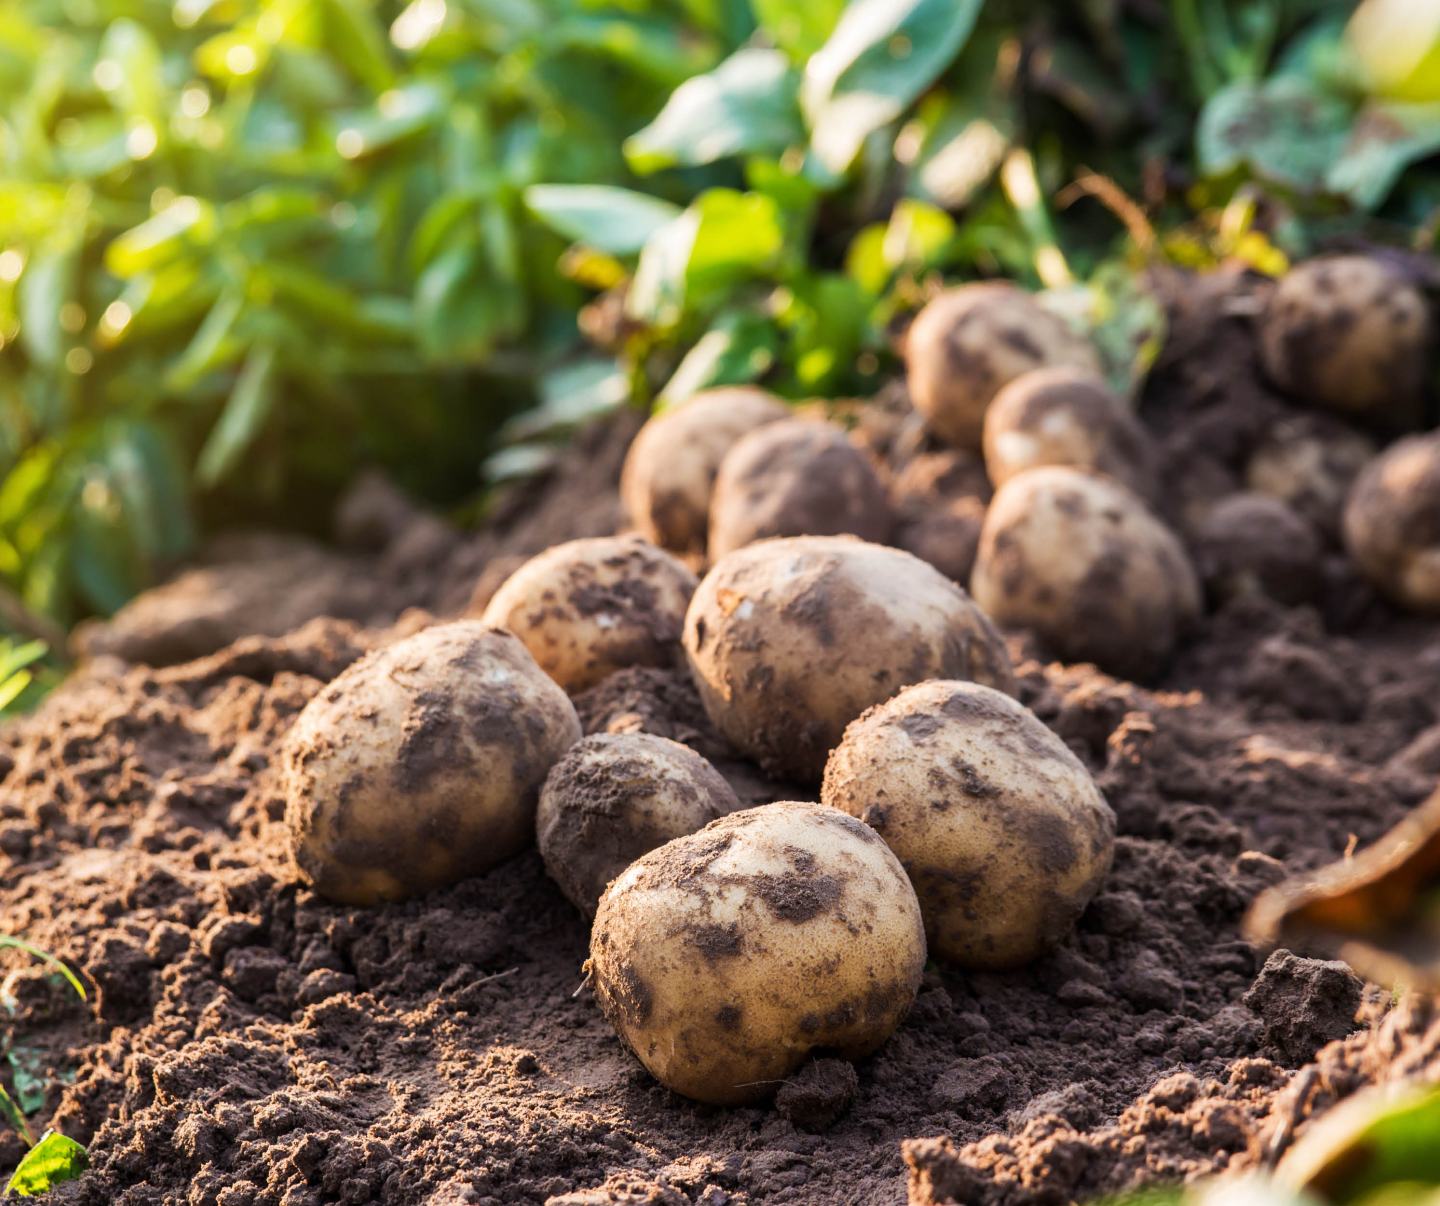 Braune Kartoffeln auf Erde im Hintergrund leicht verschwommene grüne Kartoffelpflanzen.